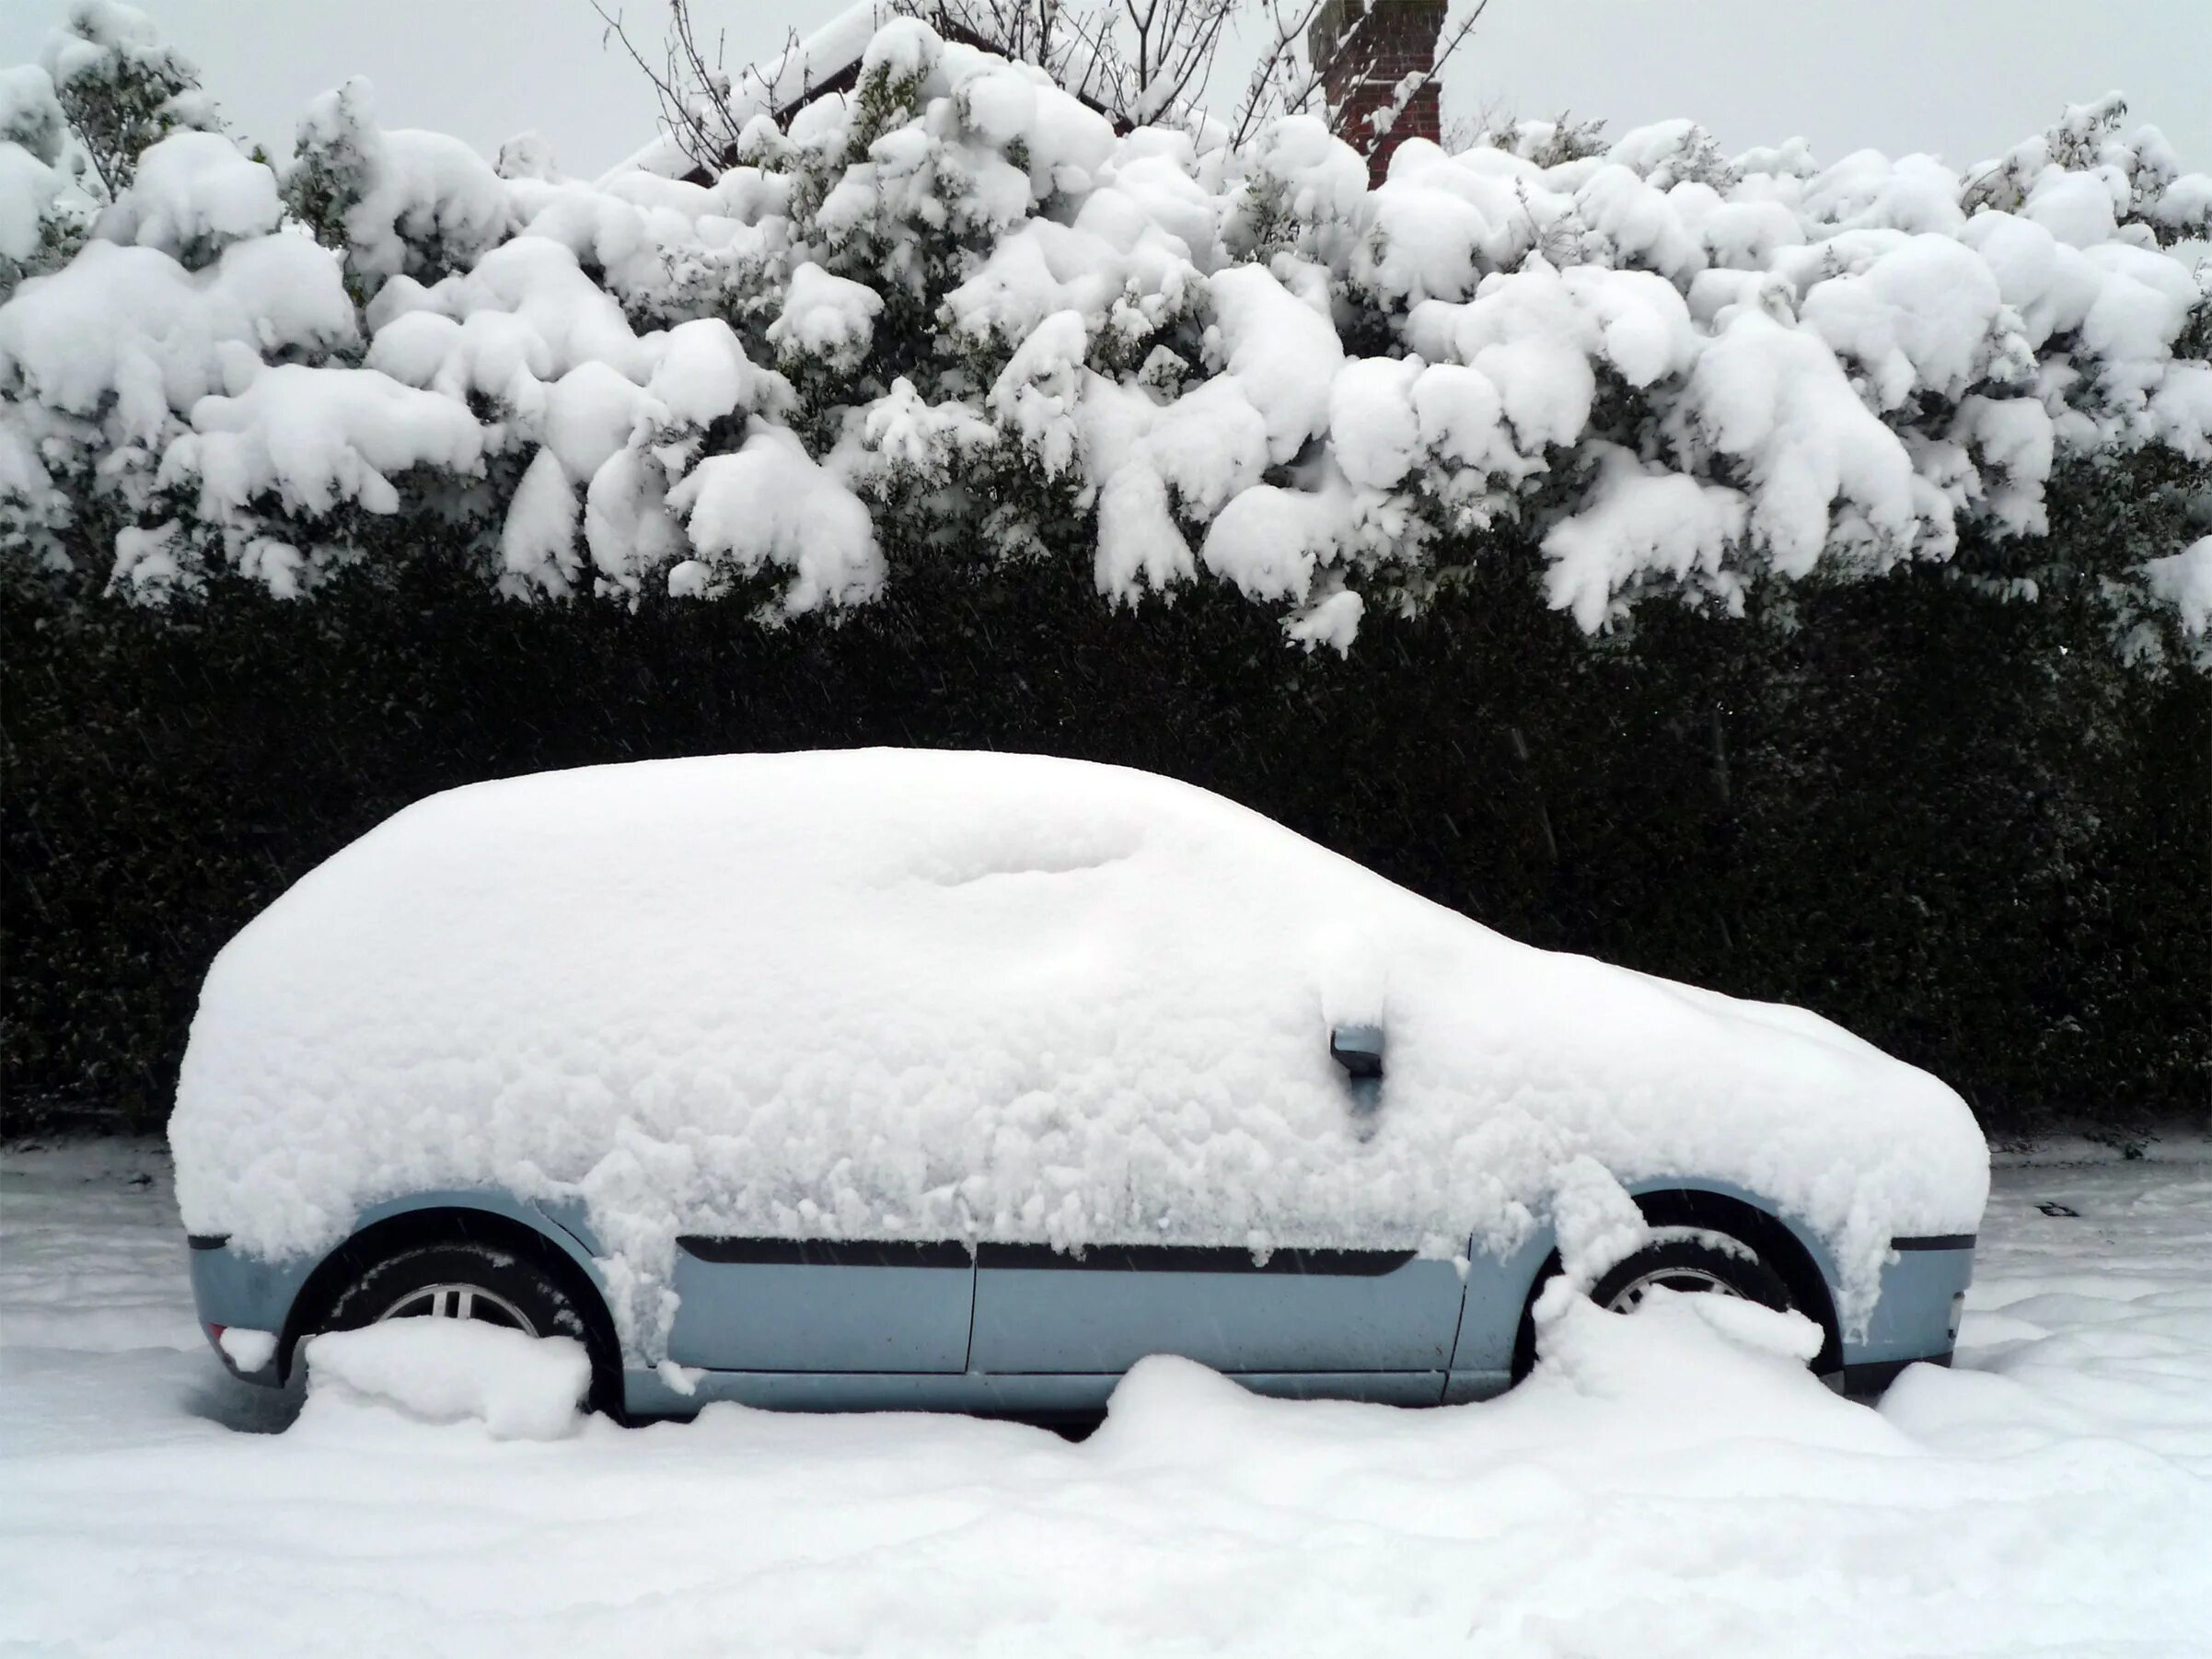 В сугробе тепло снег один. Машина в снегу. Машина под сугробом. Автомобиль под снегом. Автомобиль зимой.